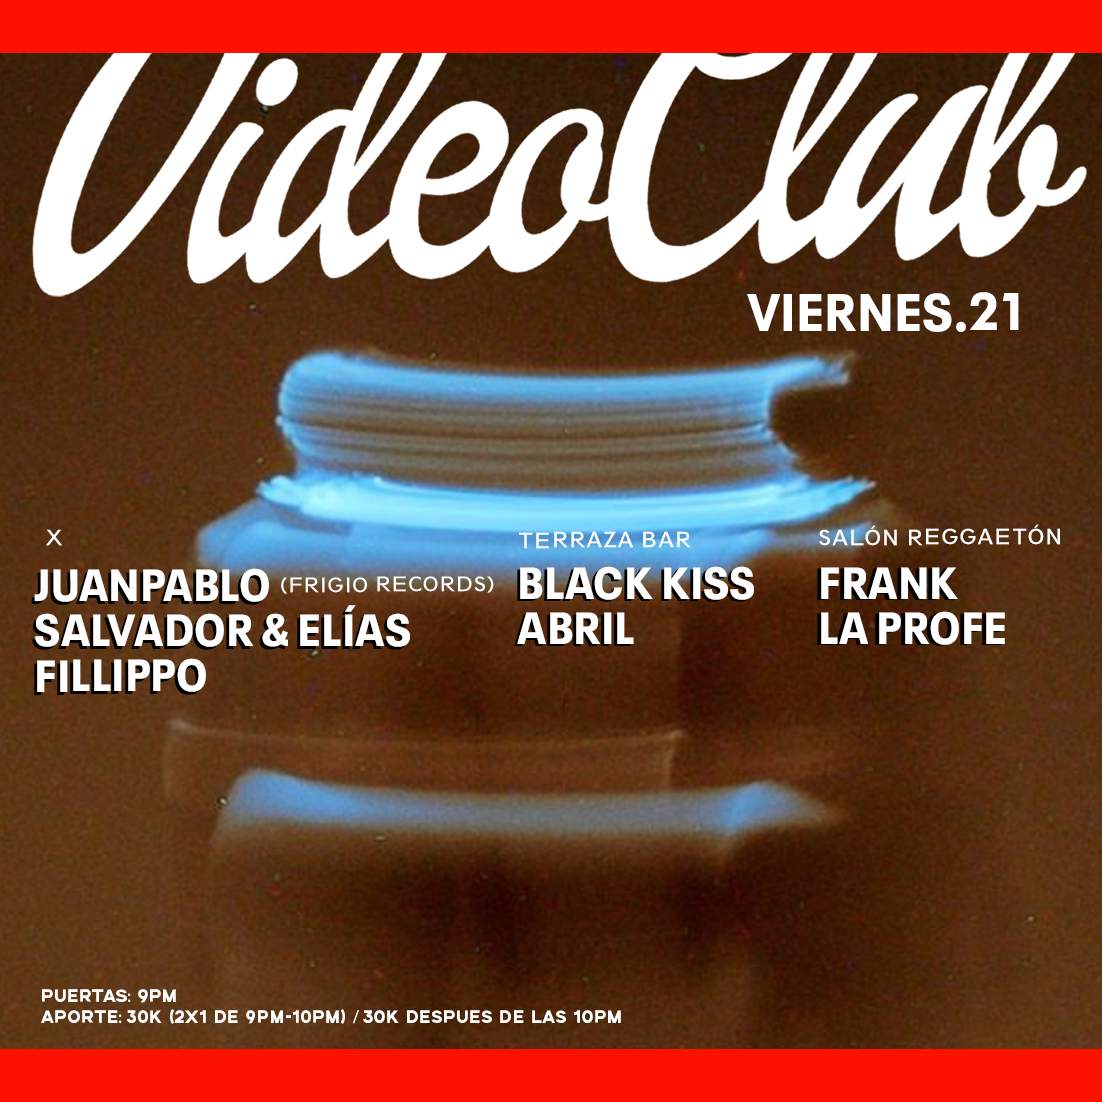 Juanpablo (Frigio Records) / Salvador & Elías / Fillippo - フライヤー表